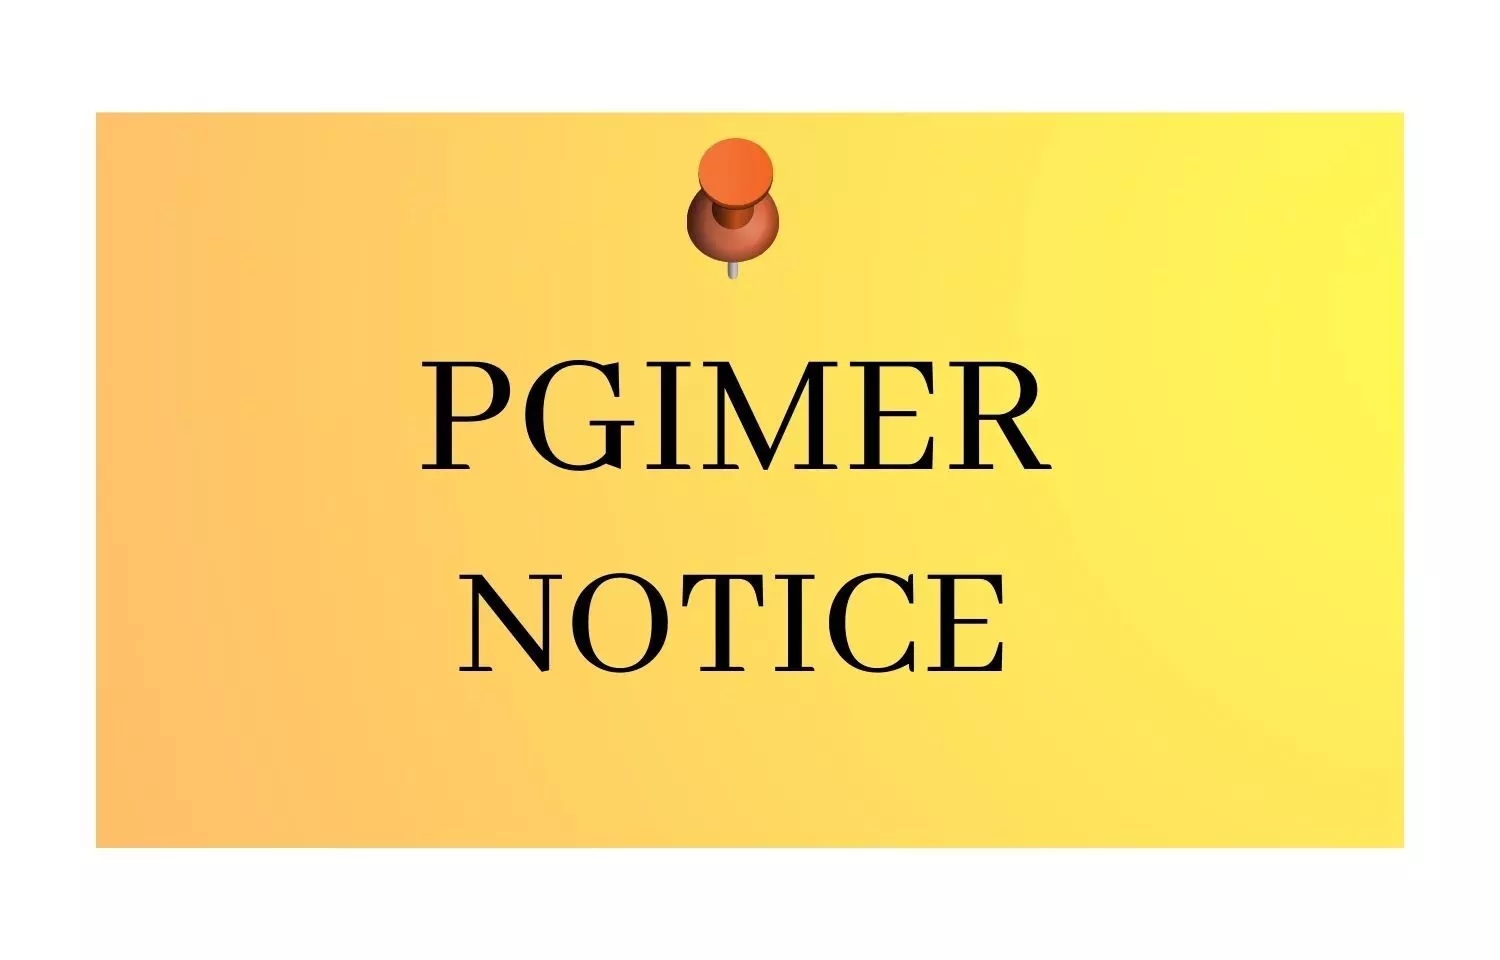 PGIMER invites applications for MSc Medical Biotechnology